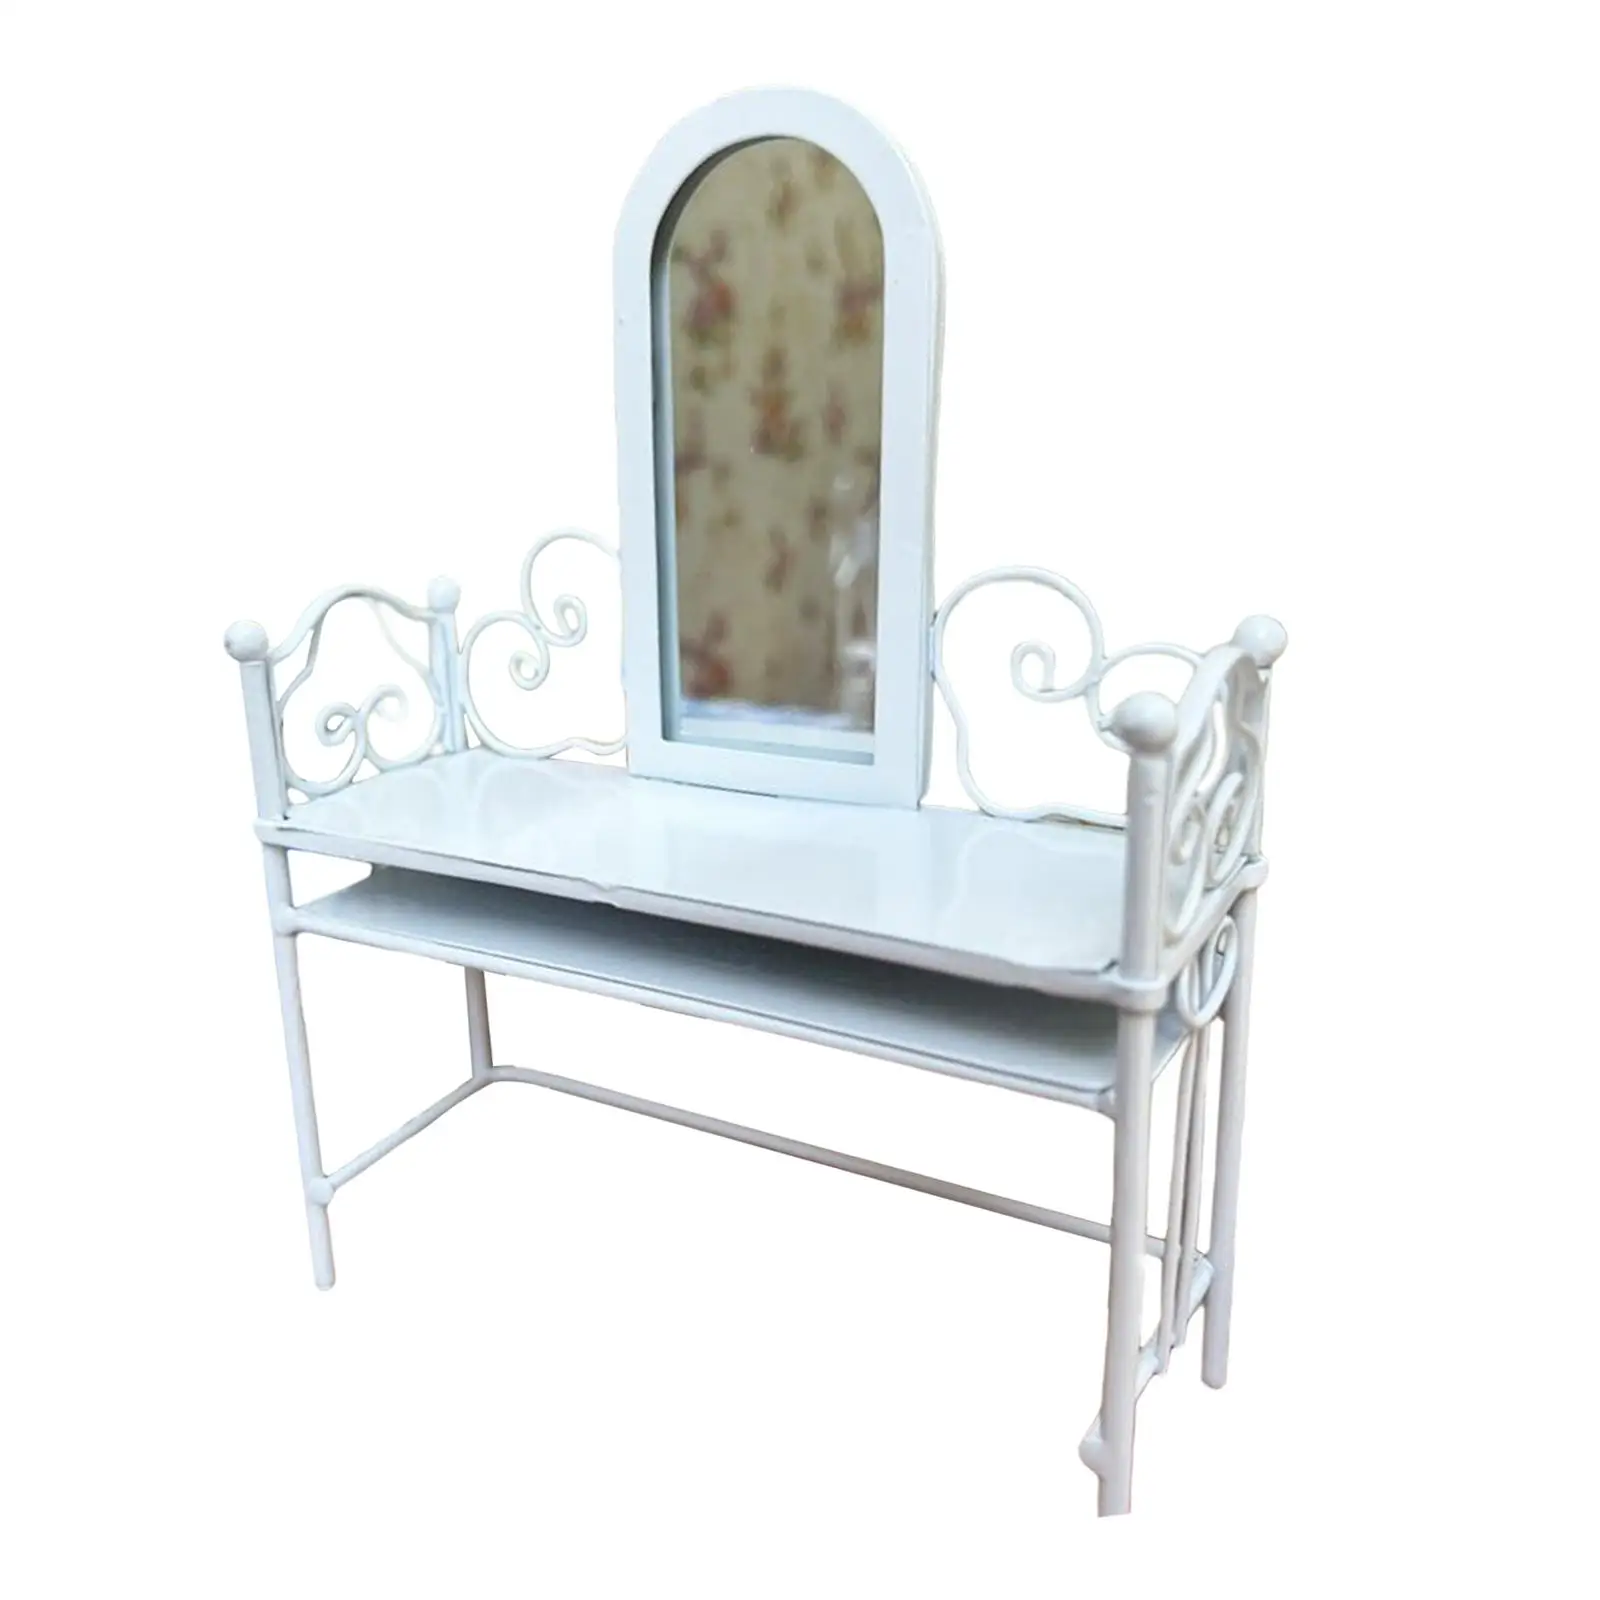 Modeliranje 1/12 Minijaturni Toaletni stol za dollhouse, s ogledalom, bijele Dekoracije fin izrade